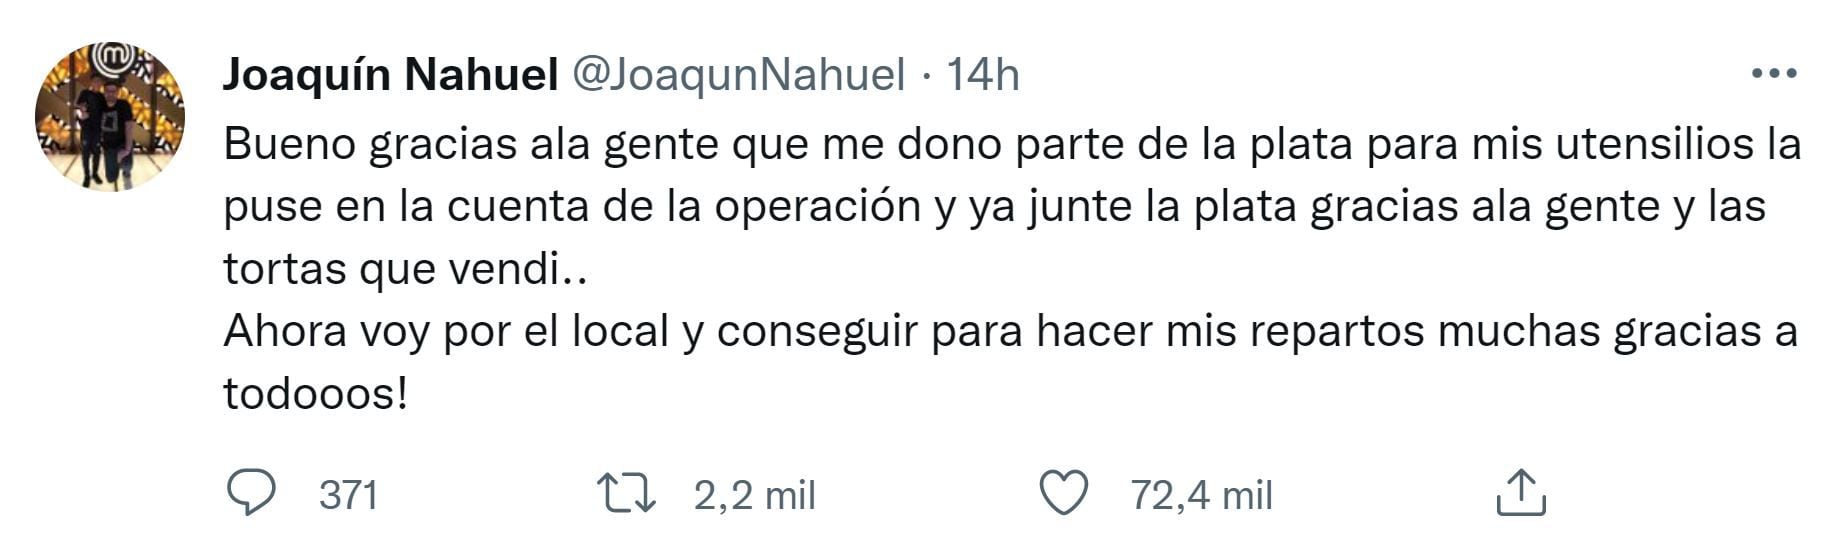 El mensaje de Joaquín Nahuel en su Twitter